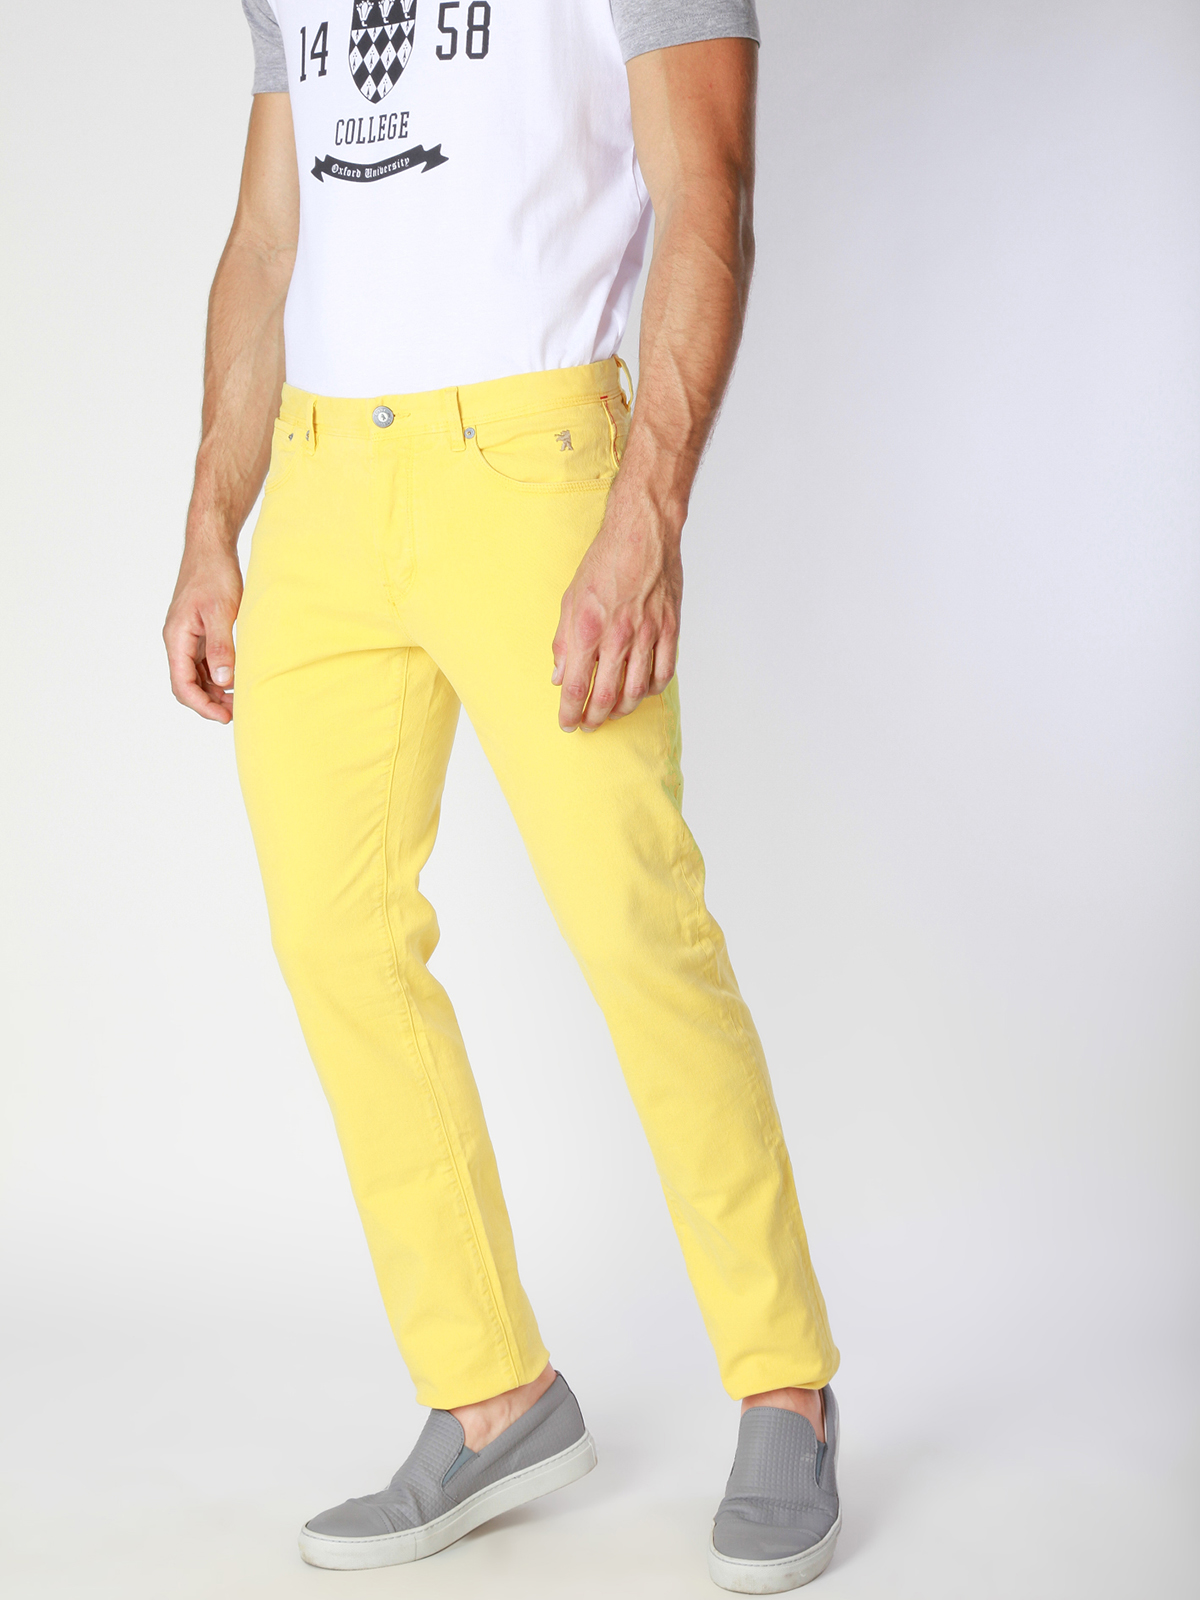 Желтые штаны мужские. Versace Jeans желтые брюки. Версачи жёлтые джинсв. Жёлтые джинсы мужские. Желтые брюки мужские.